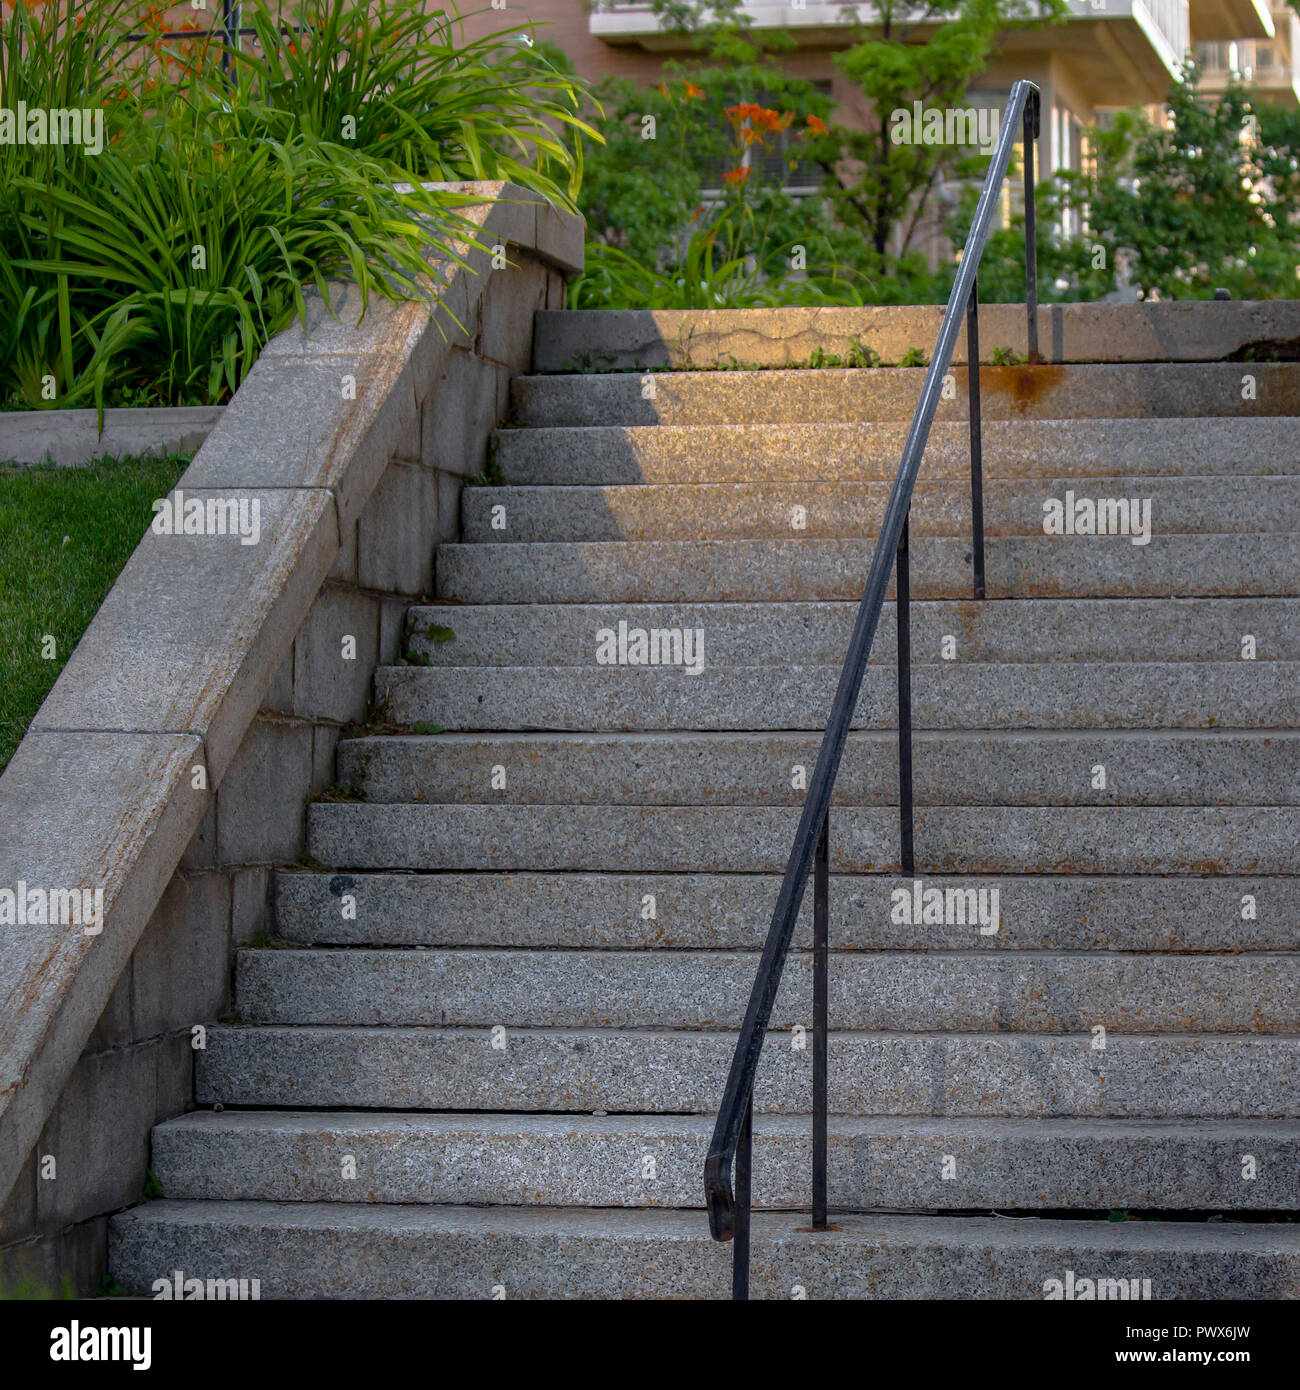 Treppen, Geländer mit Pflanzen auf der Seite unterteilt Stockfotografie -  Alamy